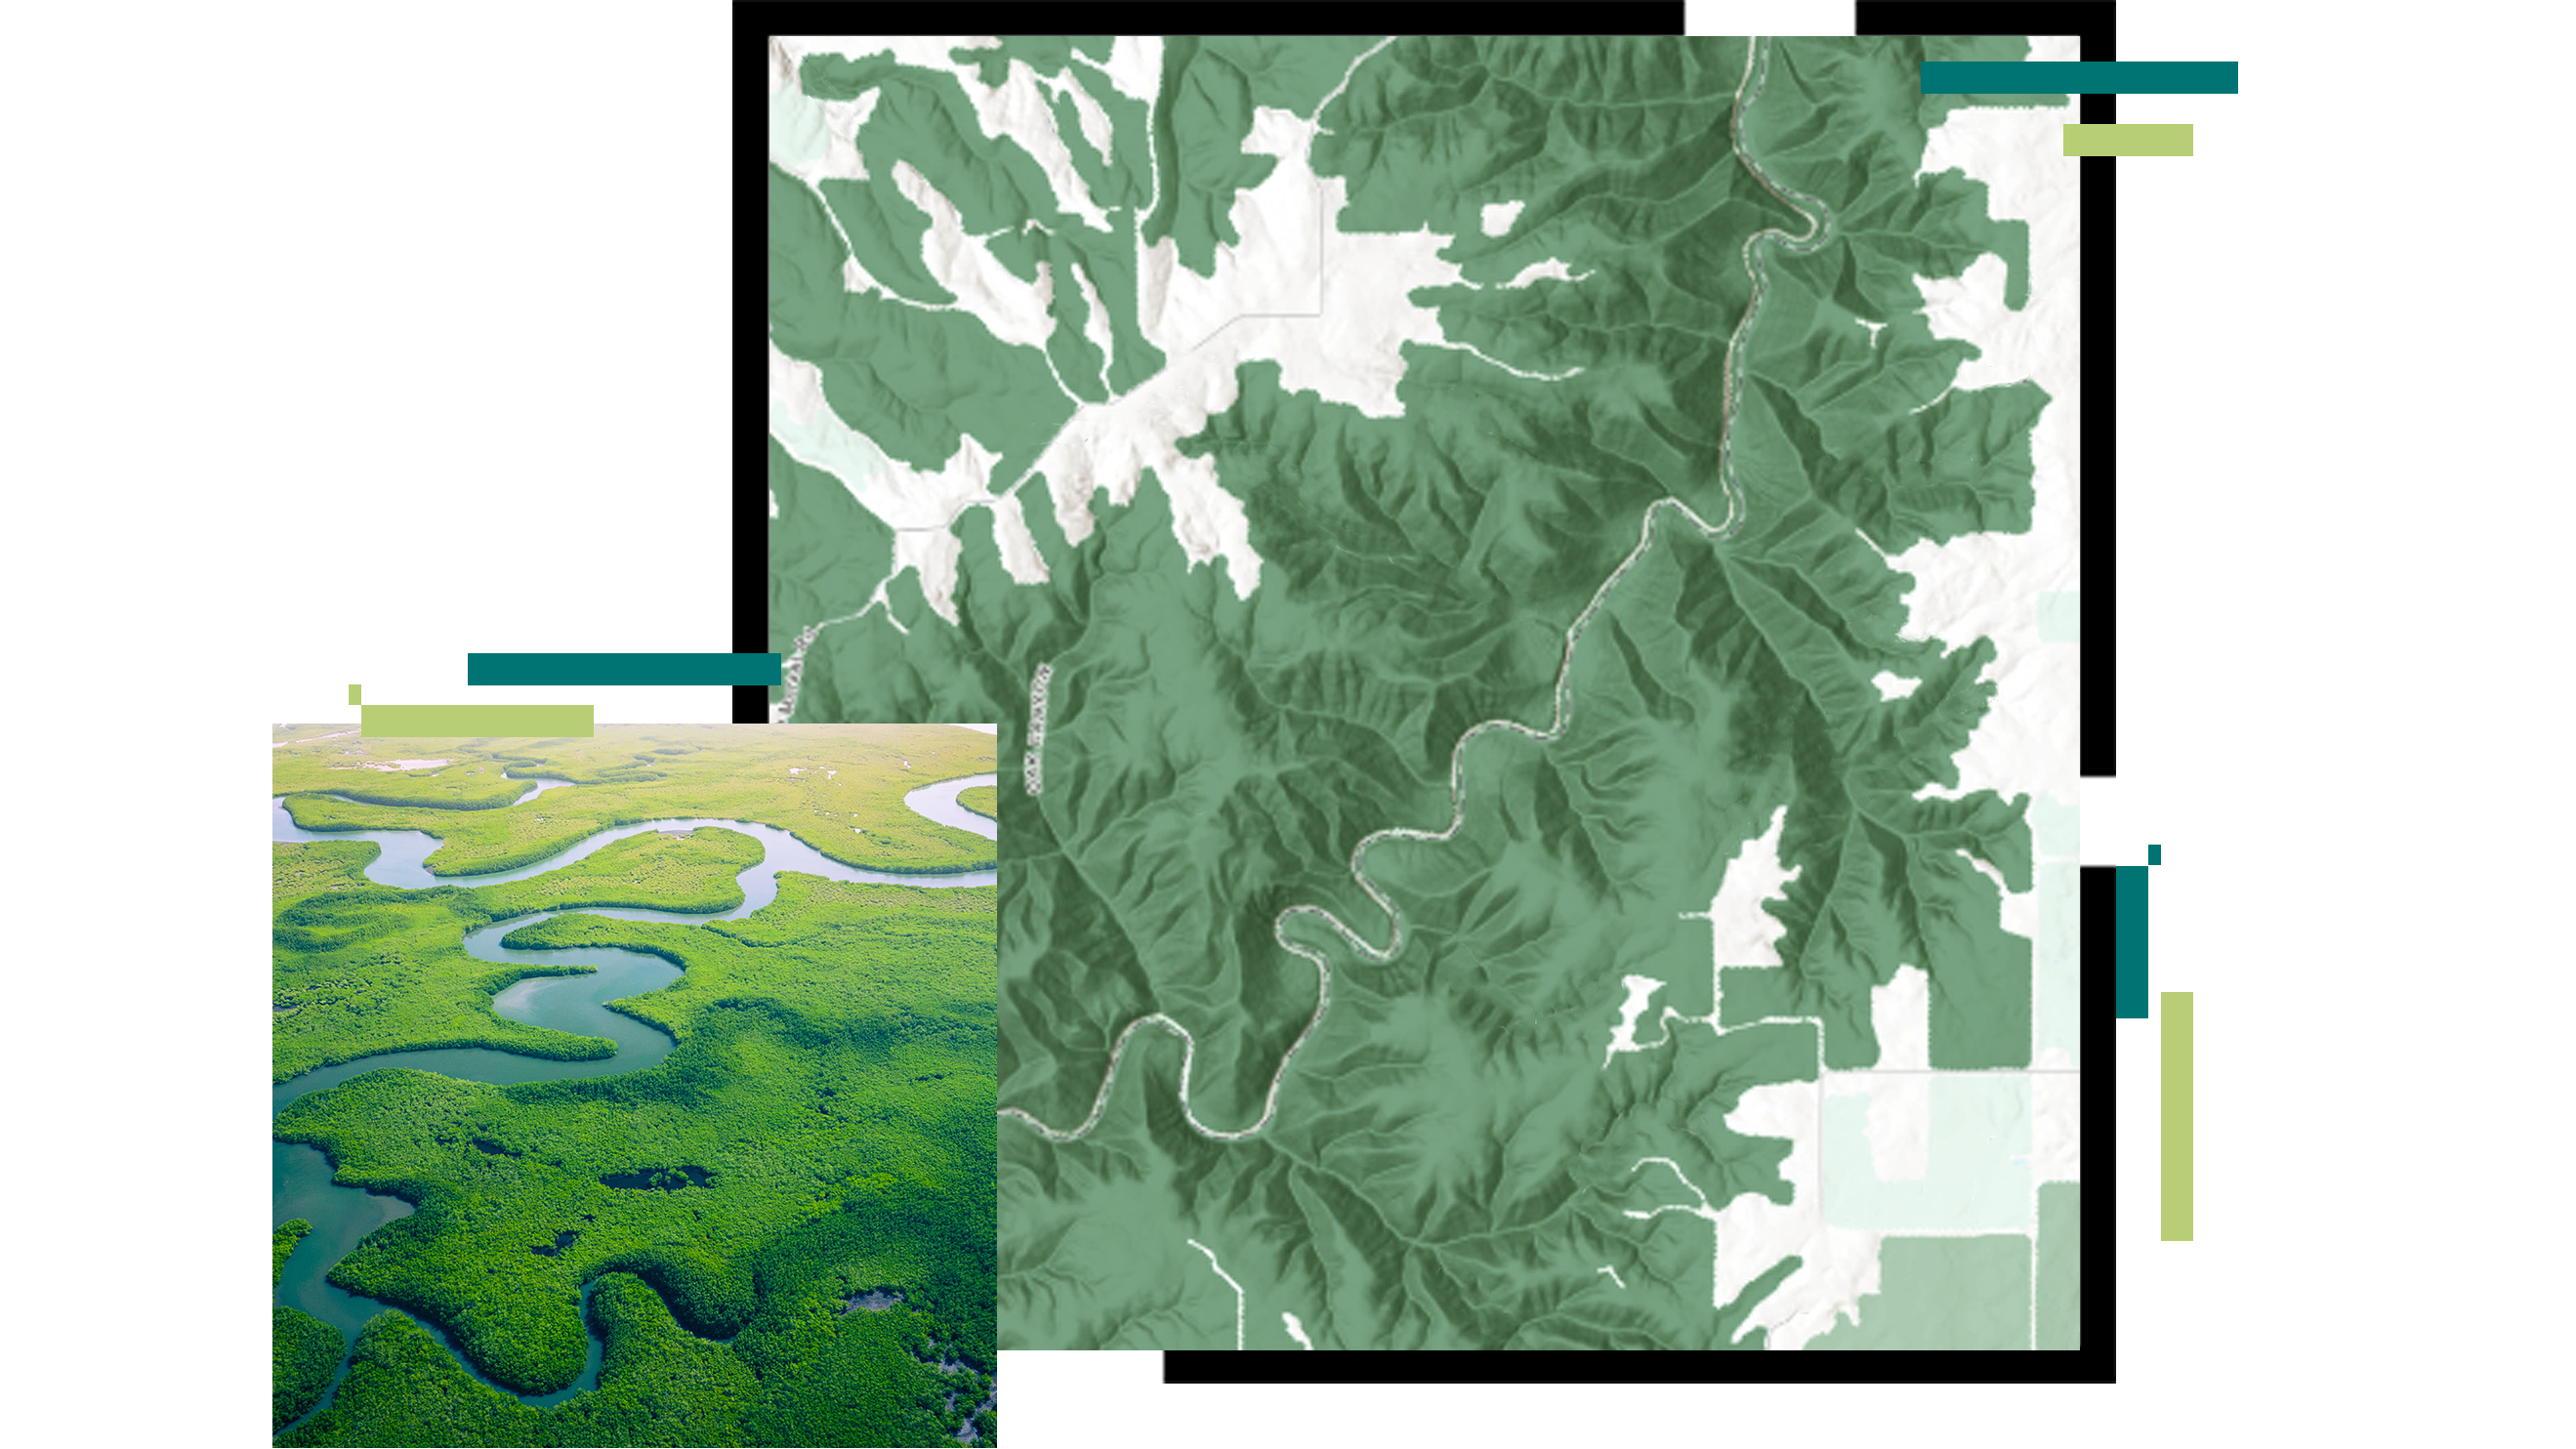 푸른 강이 가로질러 흐르는 밝은 초록색 맹그로브 숲의 항공 이미지와 구불구불한 강의 기복 맵이 중첩된 이미지